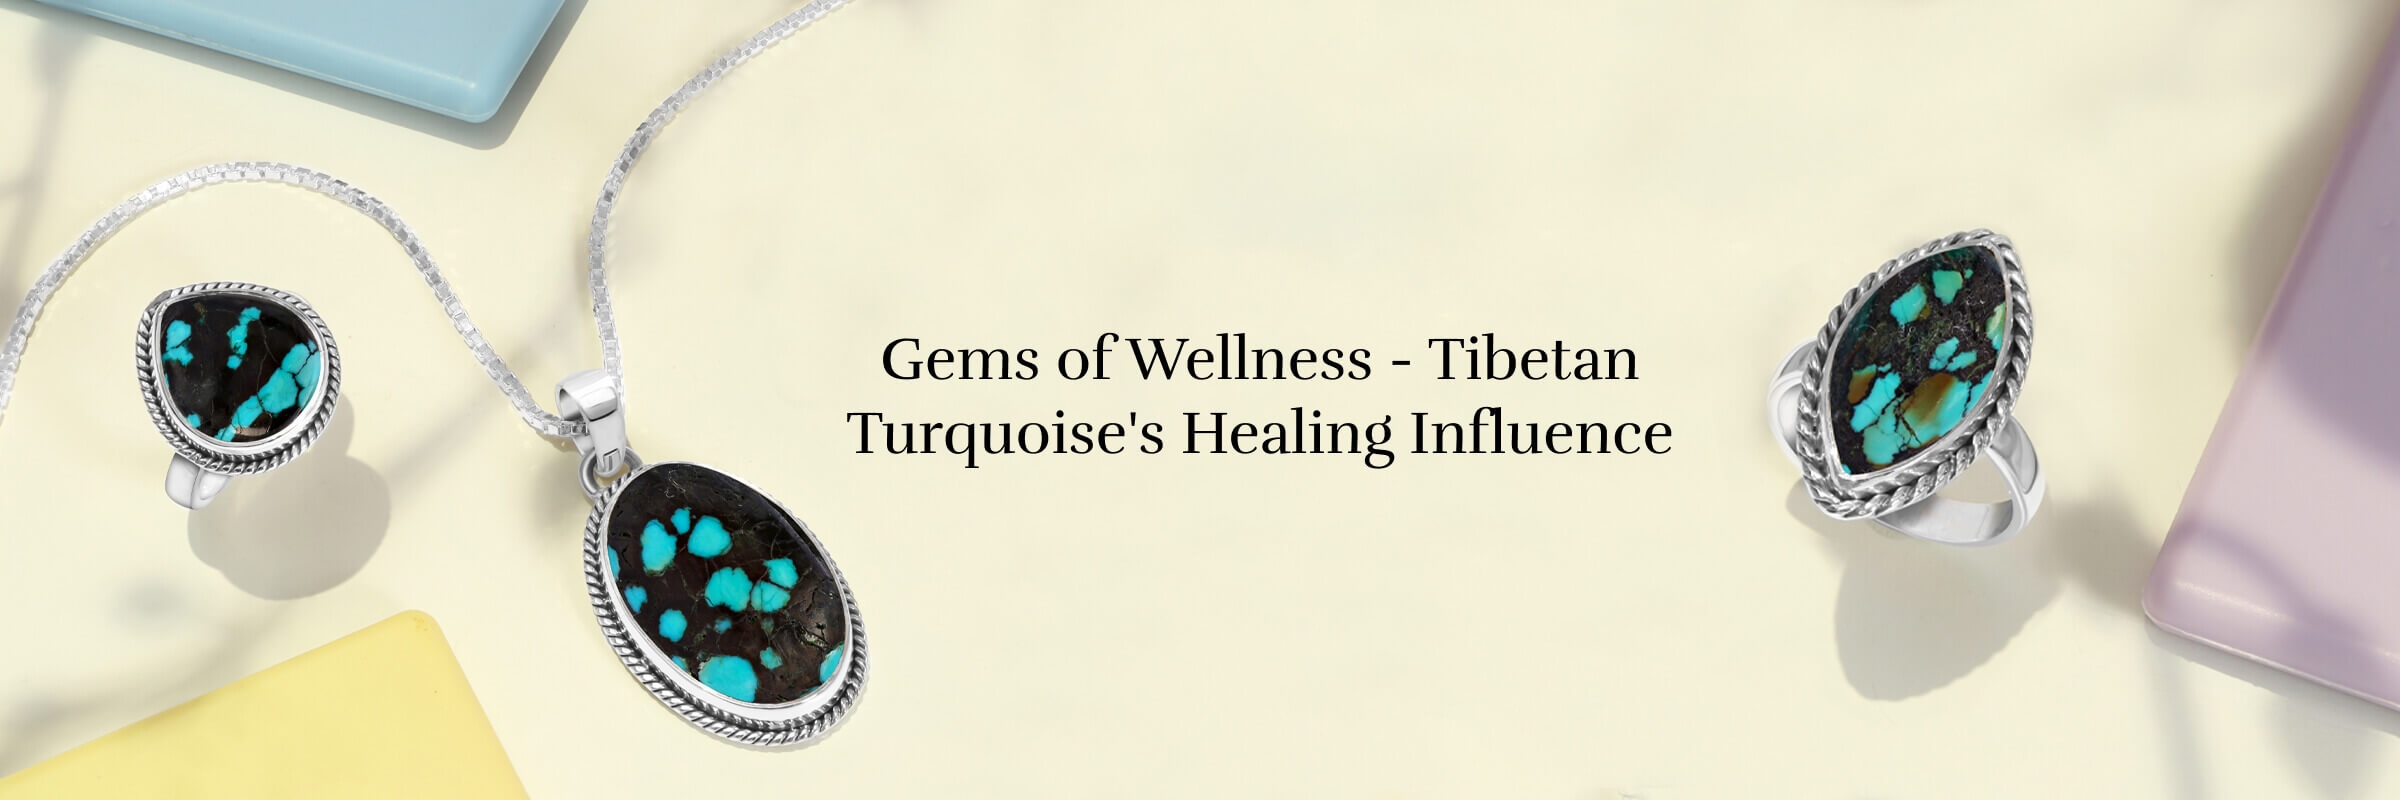 Healing Properties of Tibetan Turquoise Gem